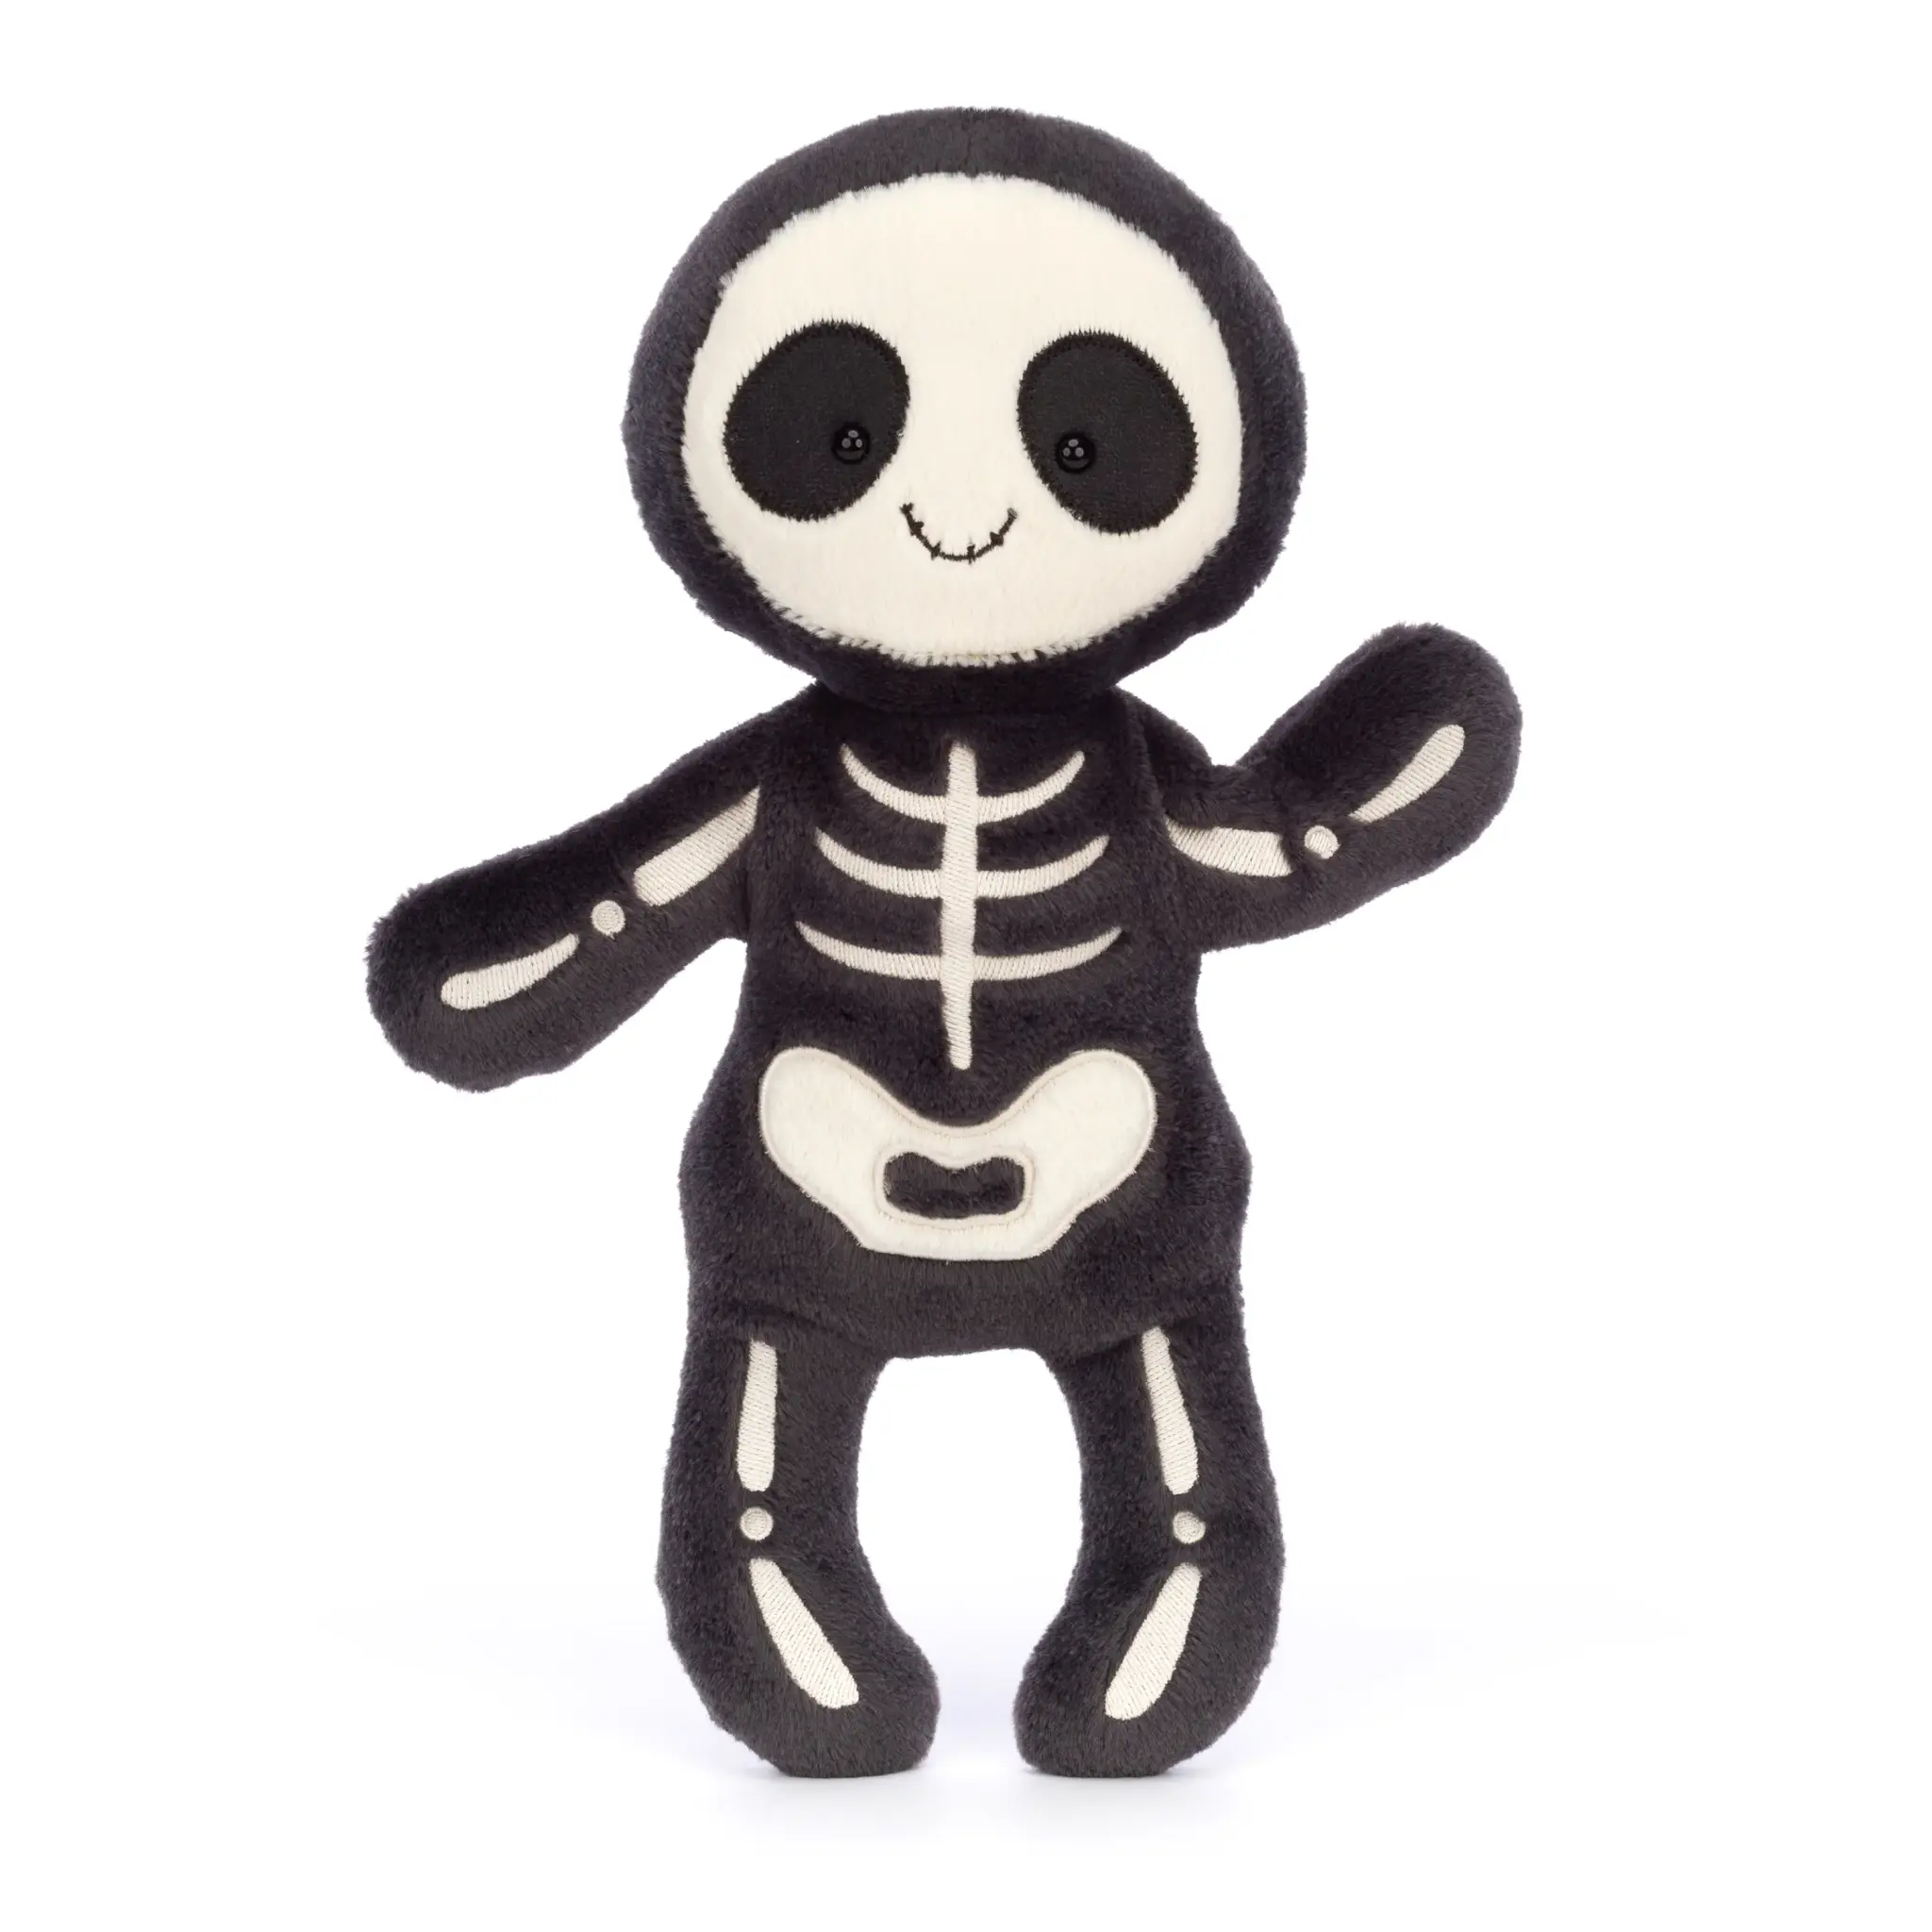 JellyCat JellyCat Skeleton Bob